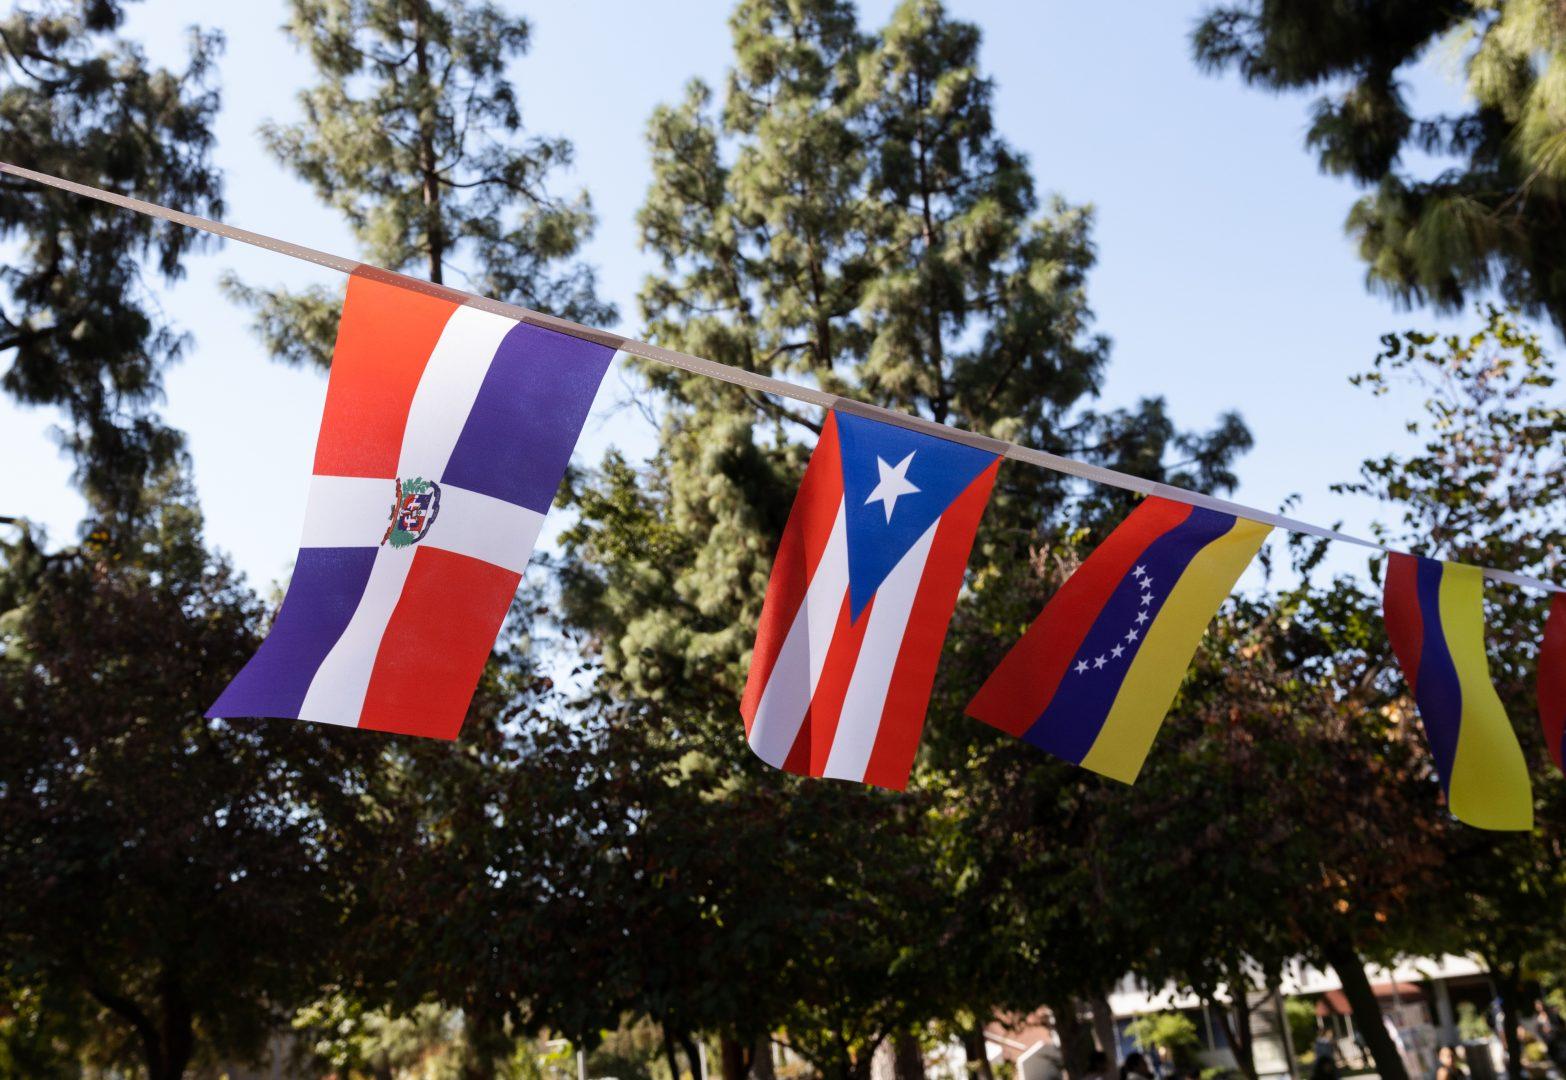 Flags decorate the Memorial Garden for La Bienvenida. (Carlos Rene Castro/The Collegian)